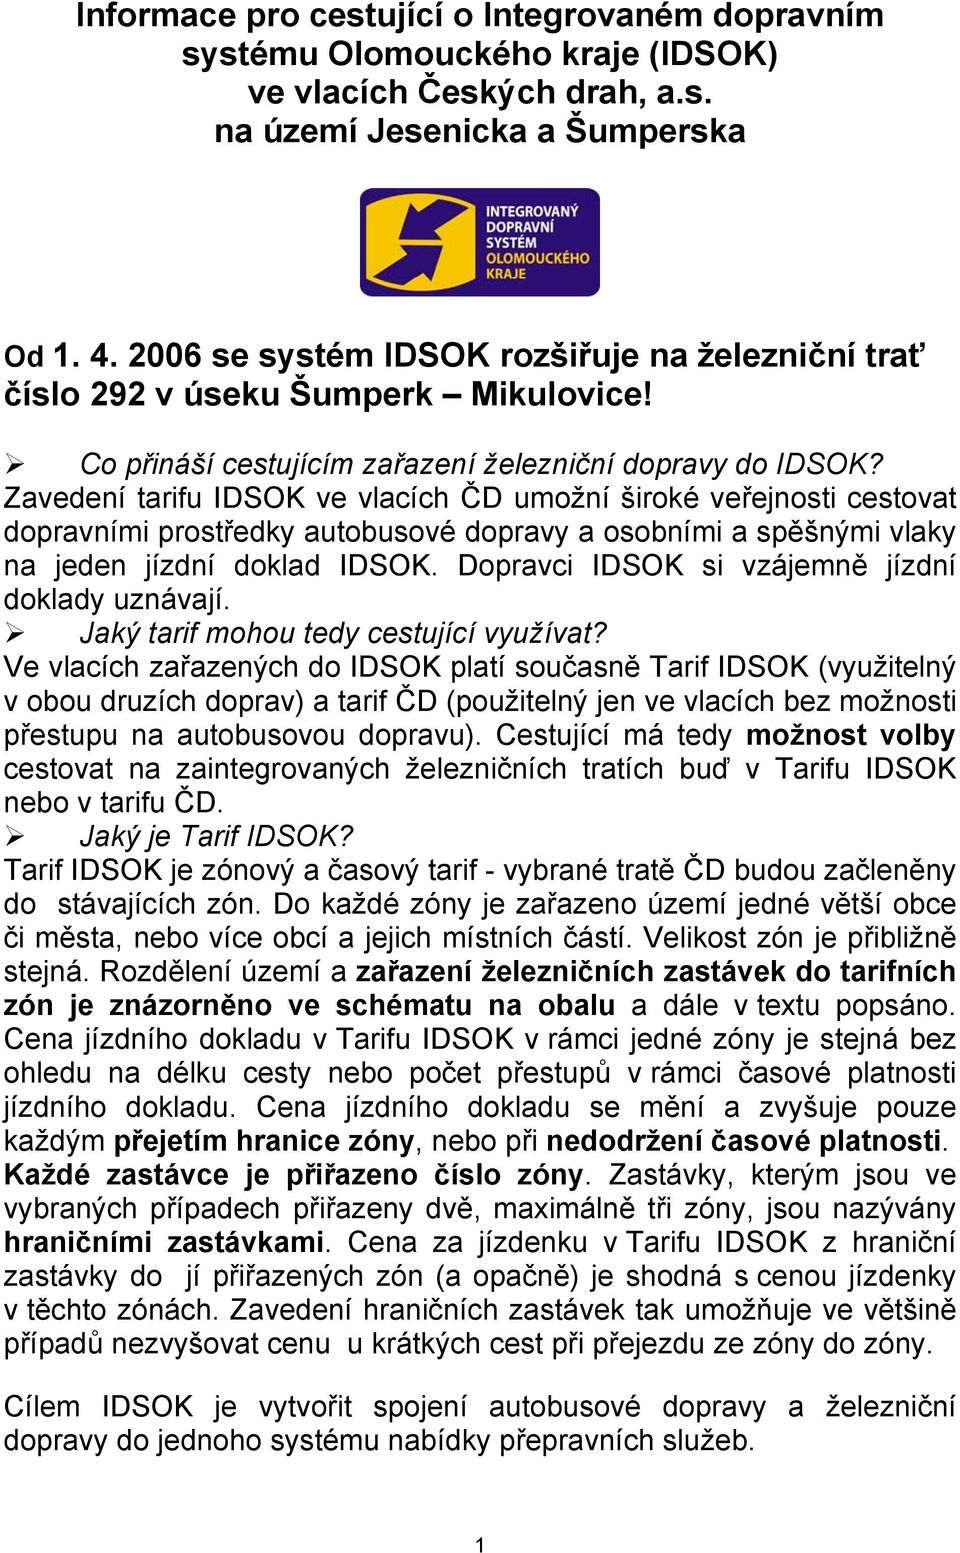 Zavedení tarifu IDSOK ve vlacích ČD umožní široké veřejnosti cestovat dopravními prostředky autobusové dopravy a osobními a spěšnými vlaky na jeden jízdní doklad IDSOK.